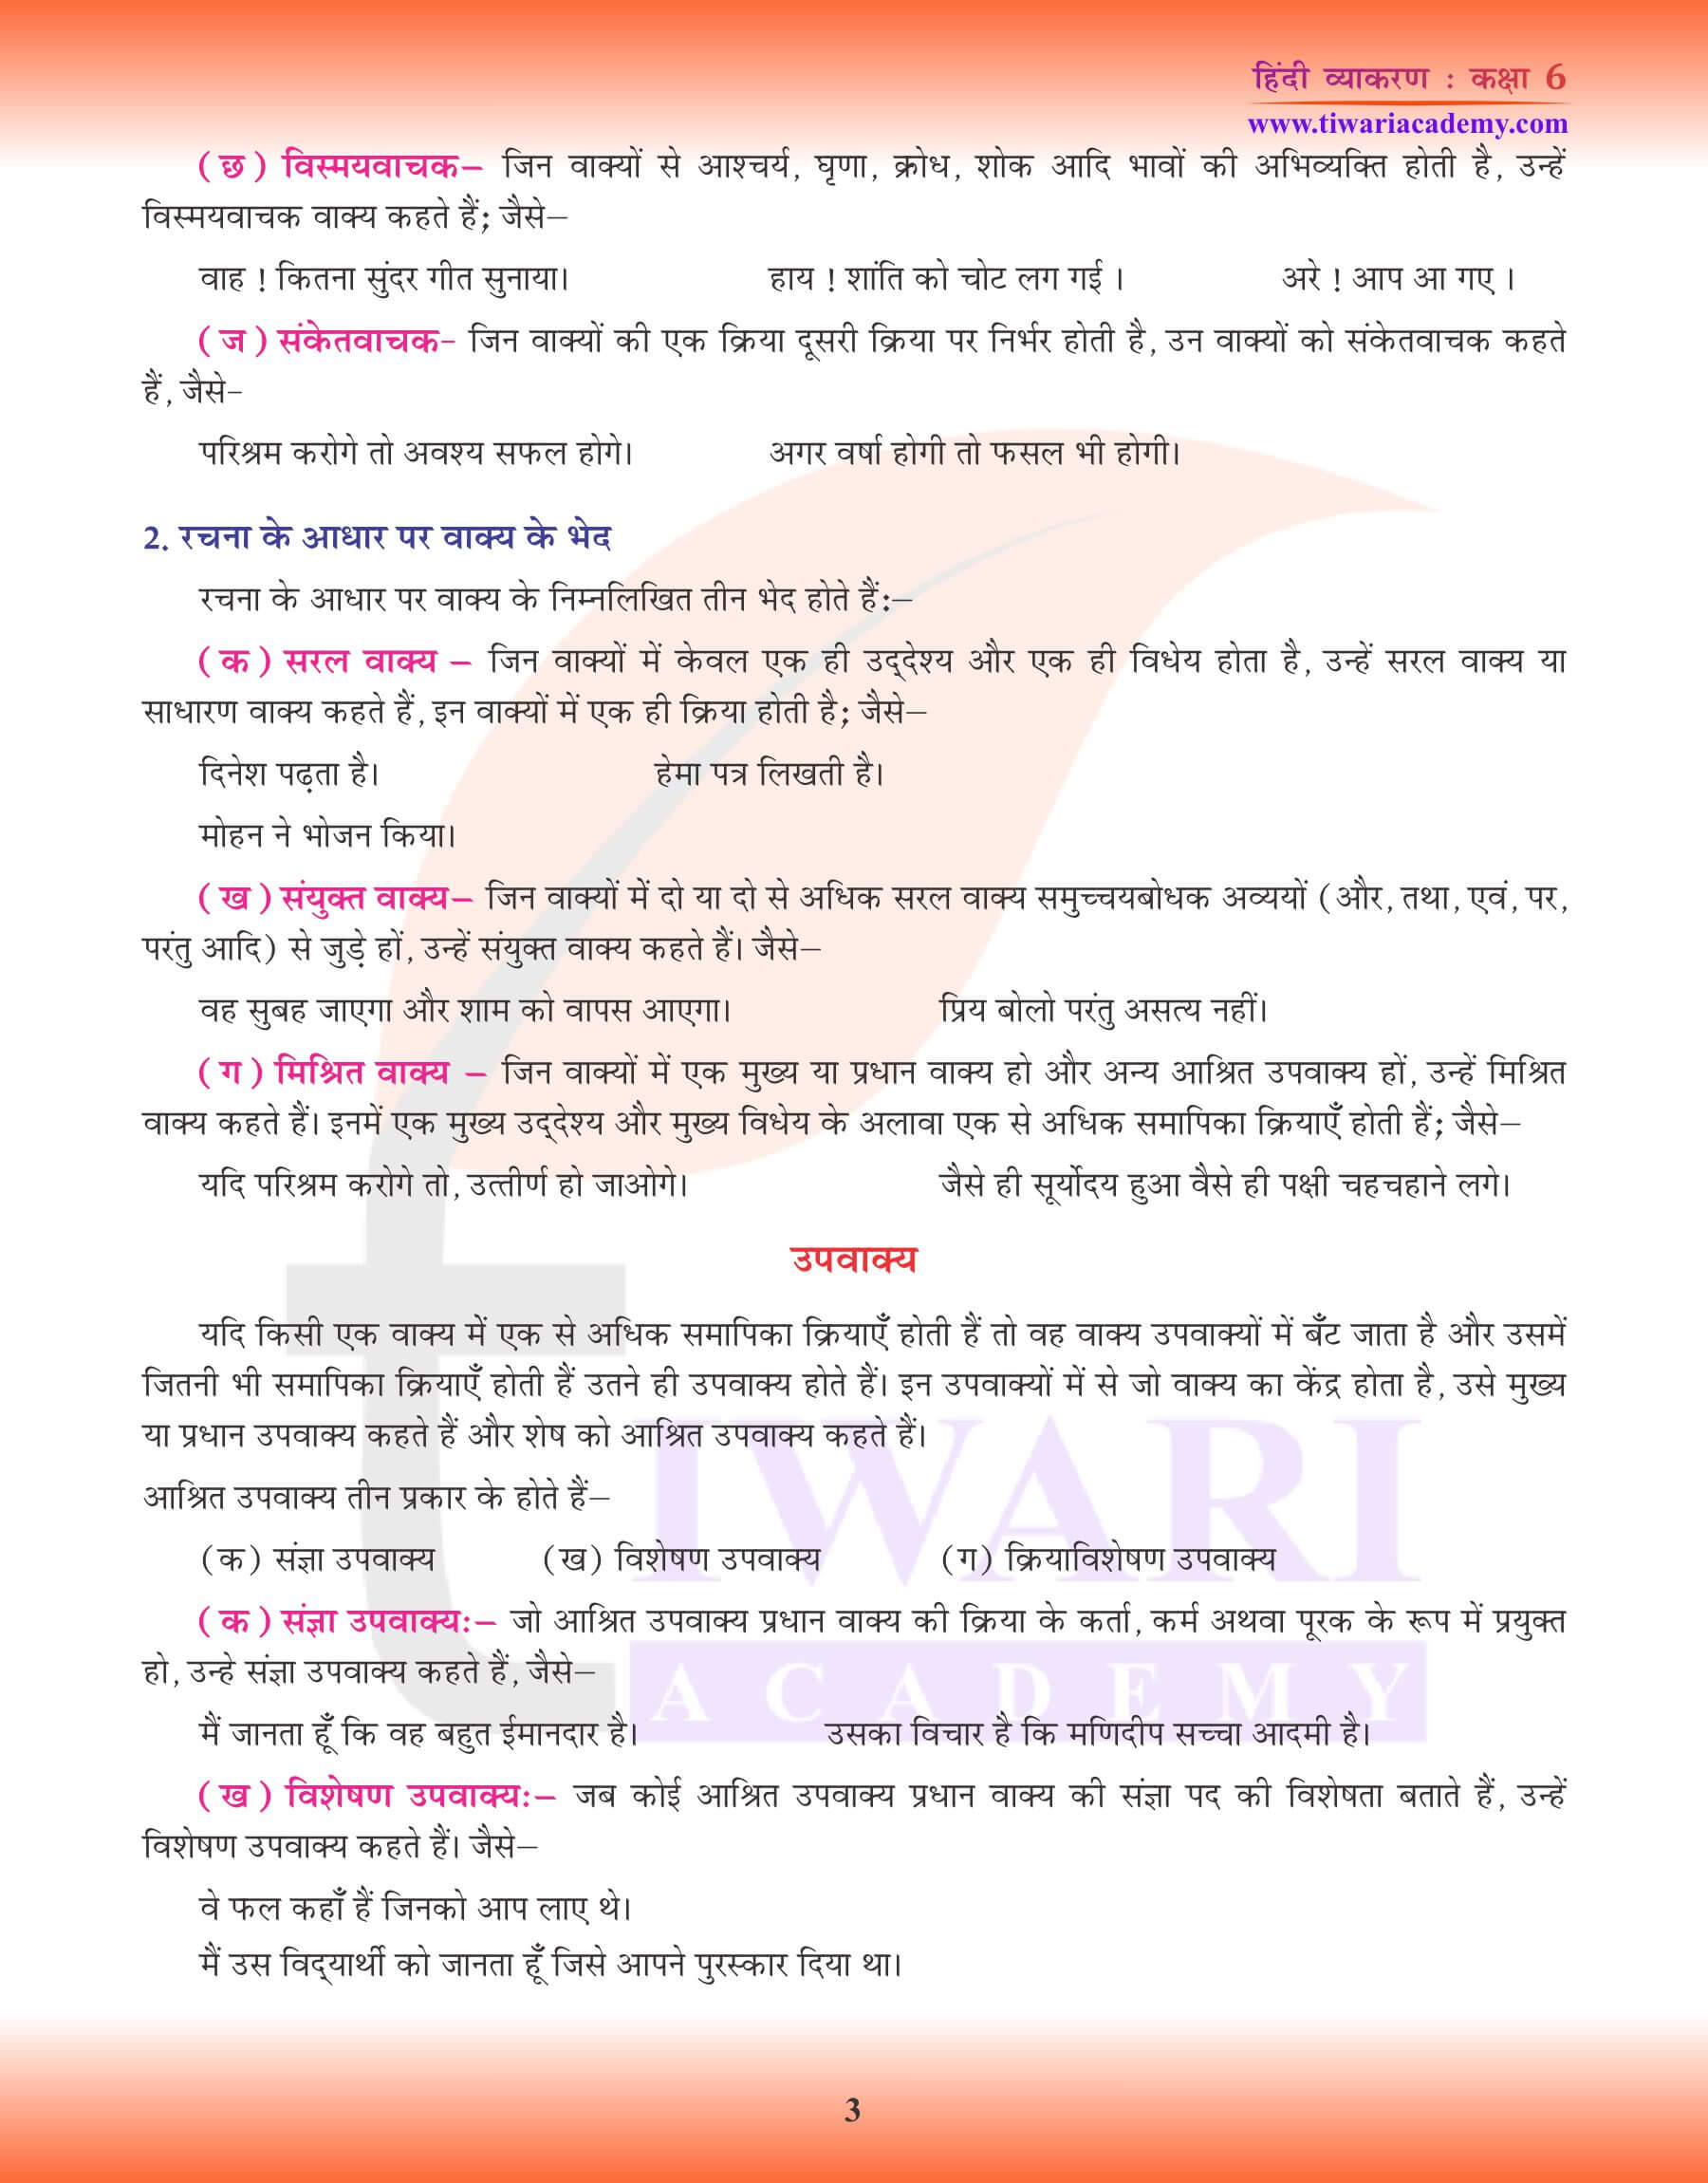 कक्षा 6 हिंदी व्याकरण वाक्य अभ्यास पुस्तिका प्रश्न उत्तर